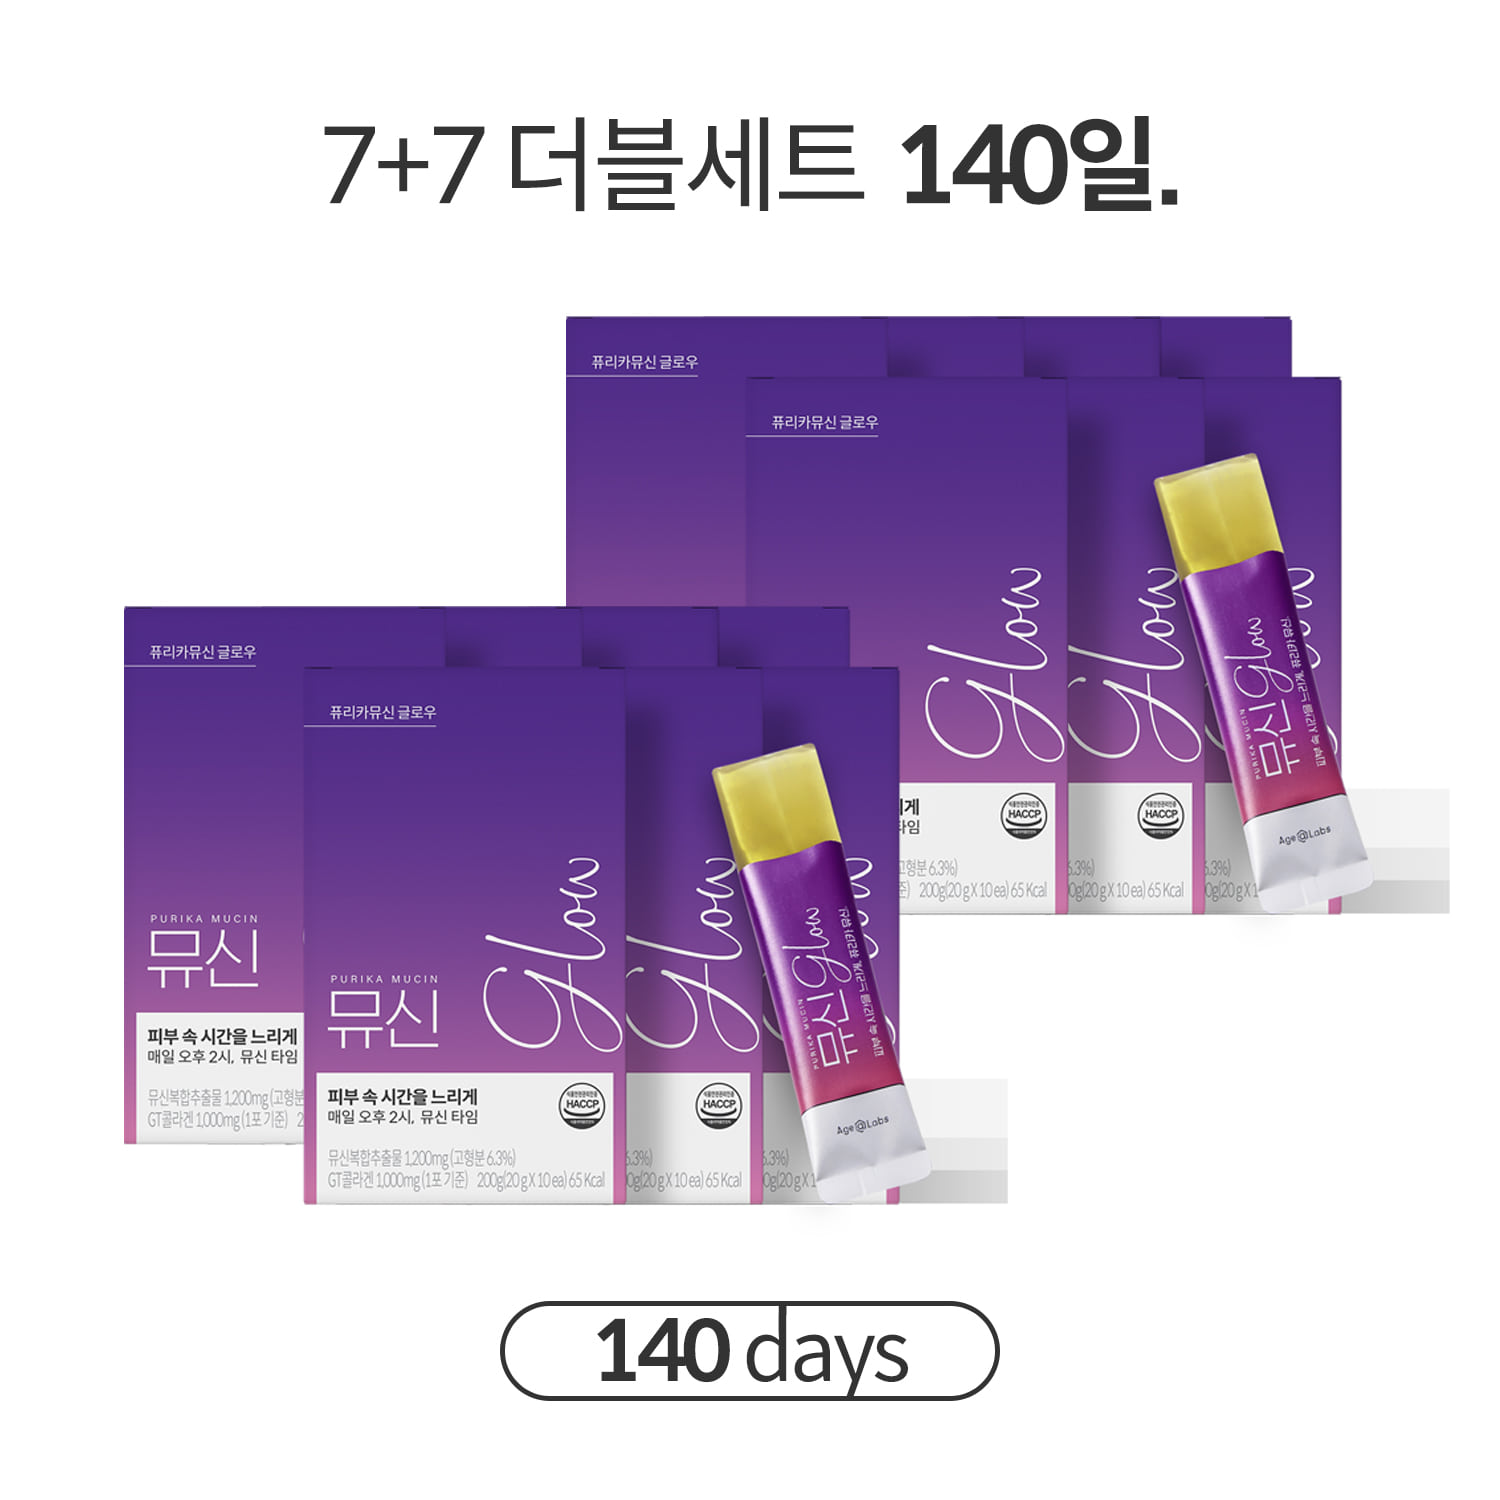 [기간한정] 뮤신 Glow 7+7세트 (14box,140일) + 쇼핑백 무료증정(2개)